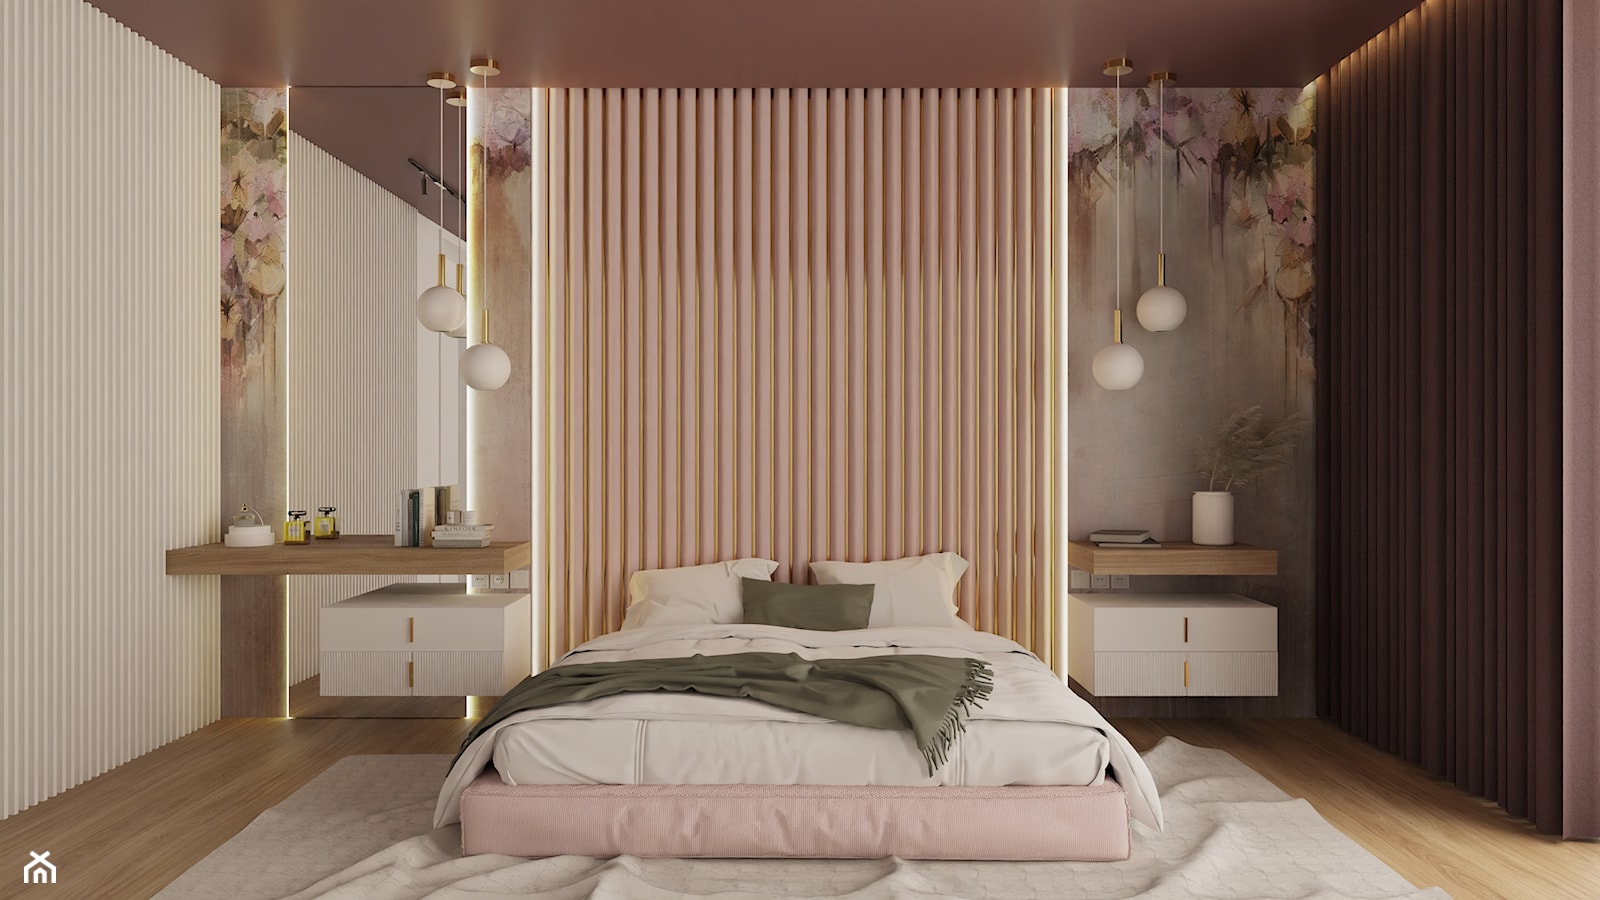 Kobica sypialnia w odcieniach różu, bieli oraz śliwki - zdjęcie od Mastmi design - Homebook